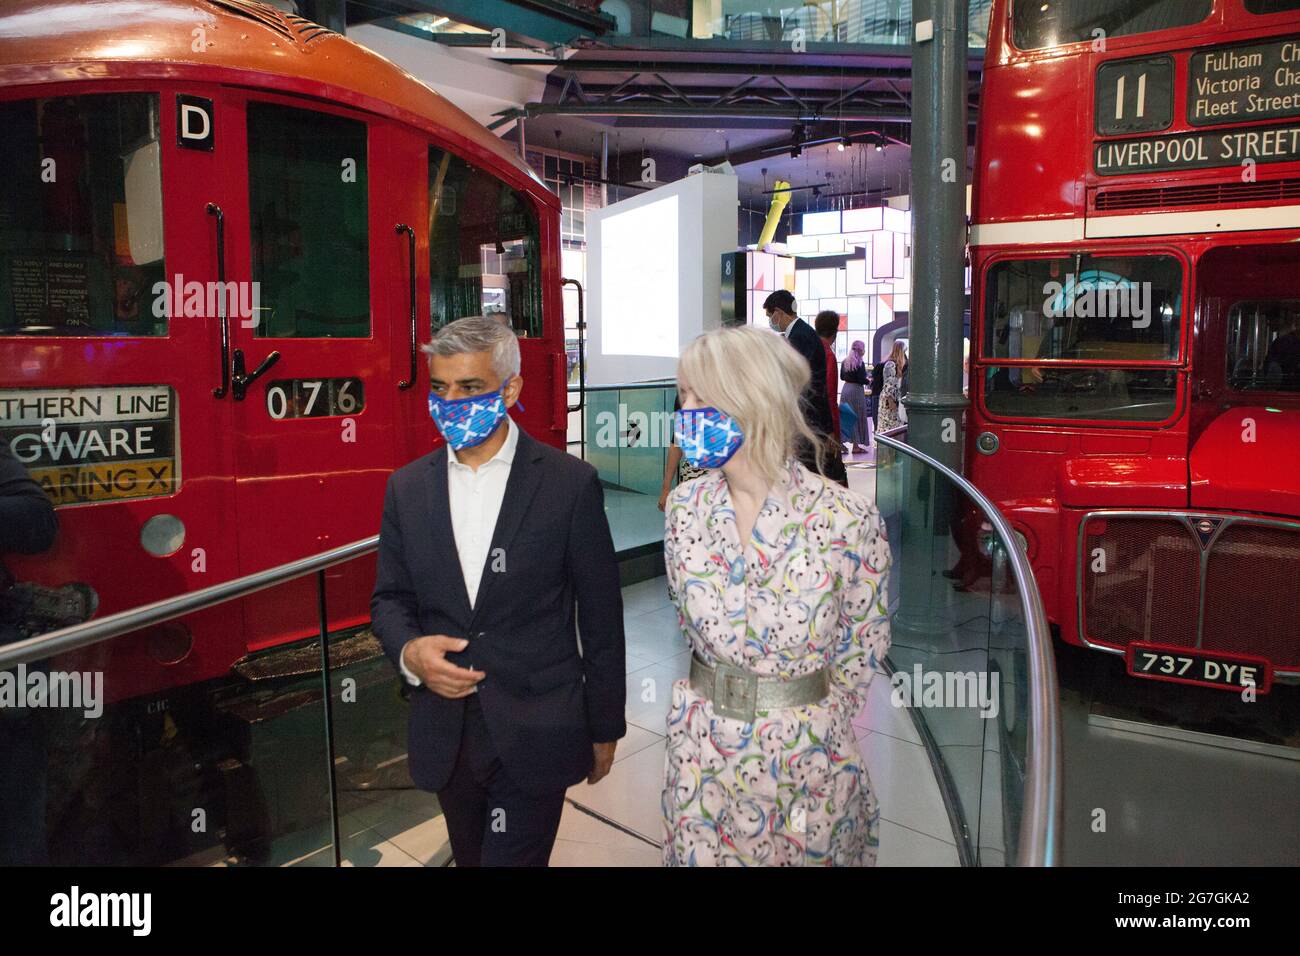 Londres, Reino Unido, 14 de julio de 2021: El alcalde de Londres Sadiq Khan visitó Covent Garden y el Museo del Transporte de Londres esta mañana para lanzar su campaña #LetsDoLondon. El objetivo es animar a los turistas a visitar el centro de Londres. Como él y Transport for London están haciendo las máscaras obligatorias en el metro de Londres, se espera que los turistas puedan visitar con seguridad a pesar de las crecientes cifras de coronavirus. En el museo se quedó sentado en el asiento del conductor de un autobús, que honra el trabajo de su padre como conductor de autobús. Con él estaban Justine Simons (vicealcaldesa de Cultura e Industrias Creativas) y Sam Mullins (director del Lon Foto de stock